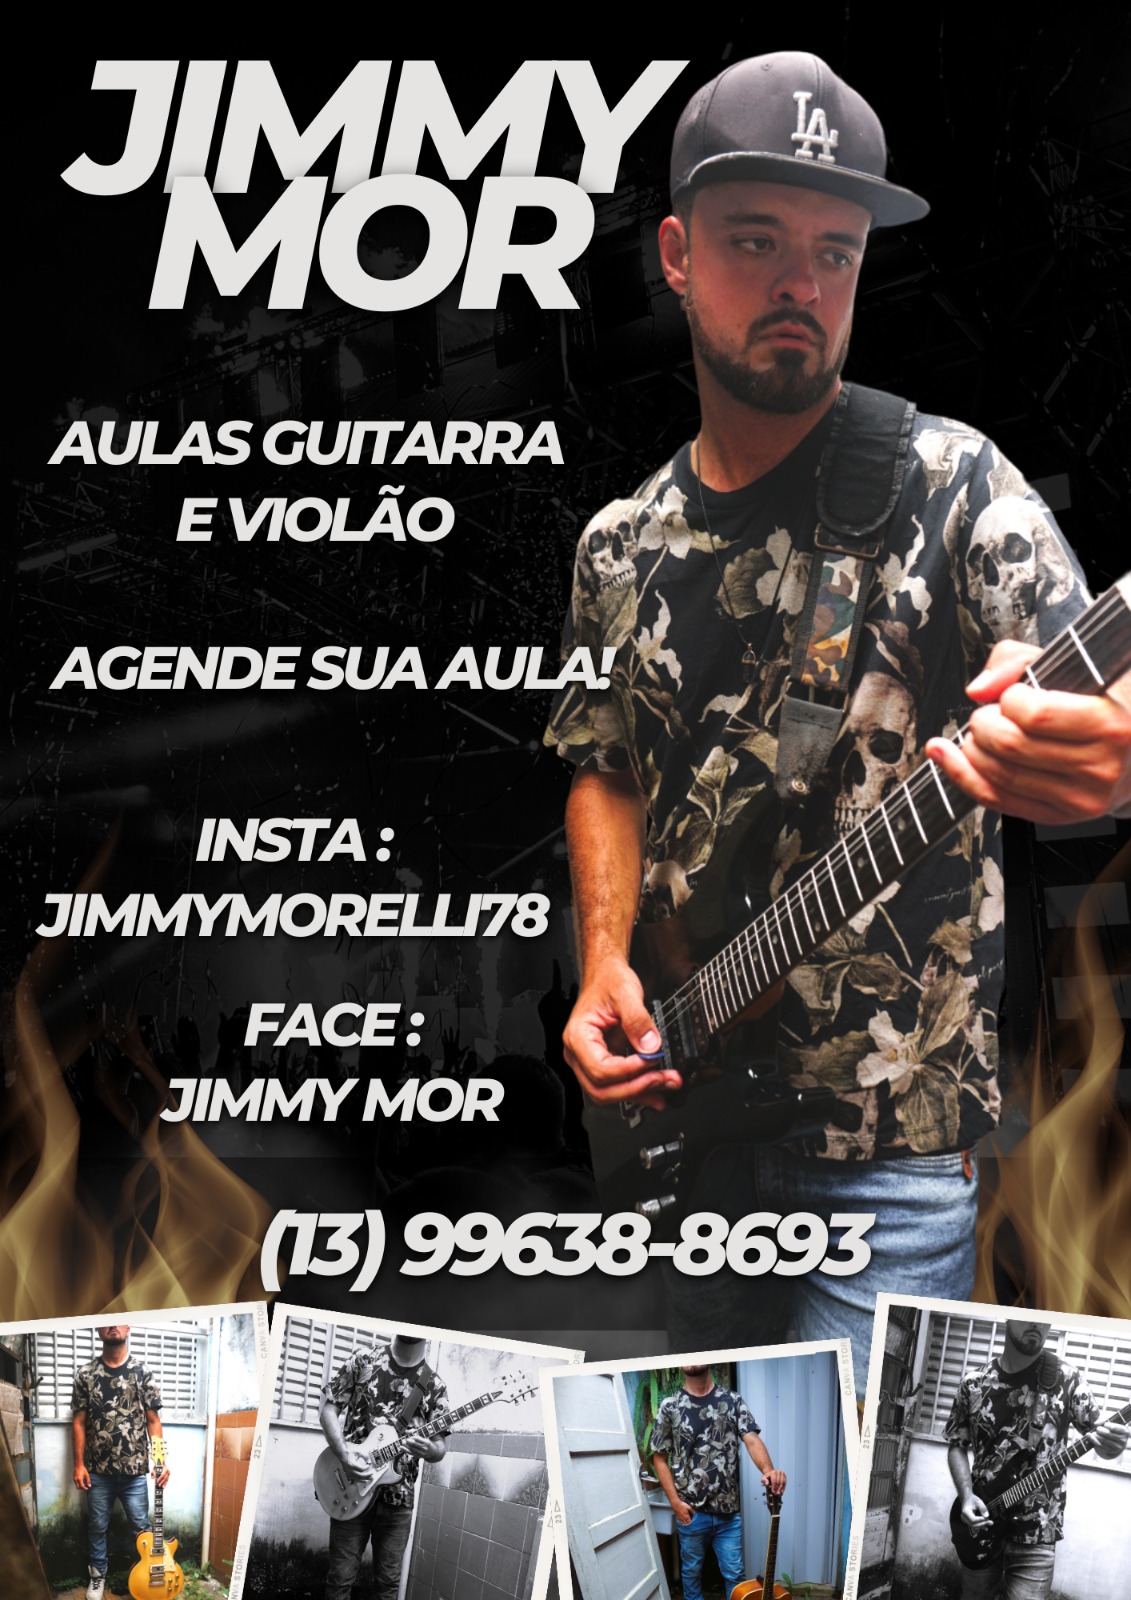 JIMMY MOR Aulas de Guitarra e Violão